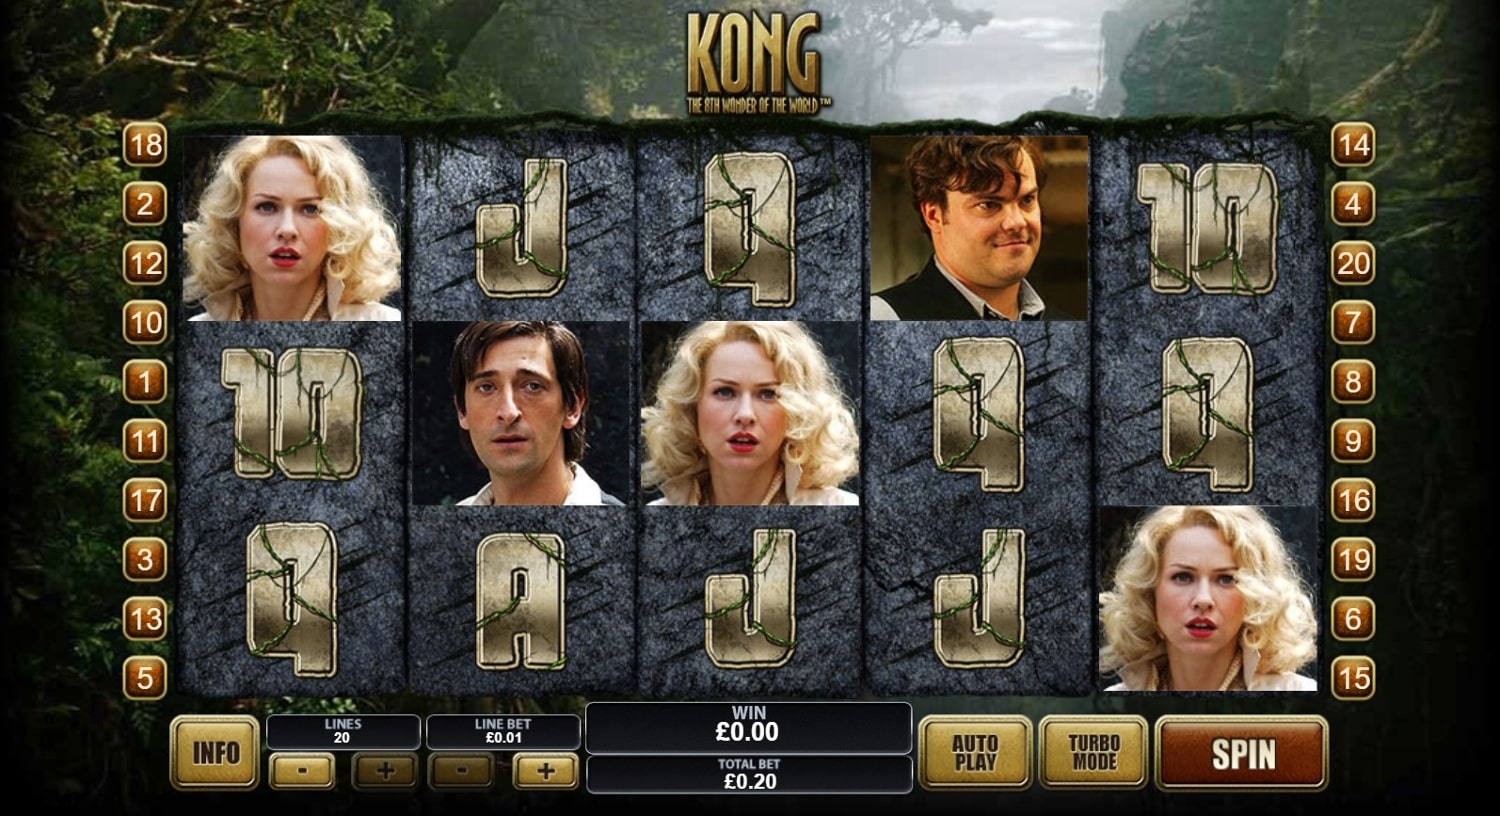 King Kong Free Spins